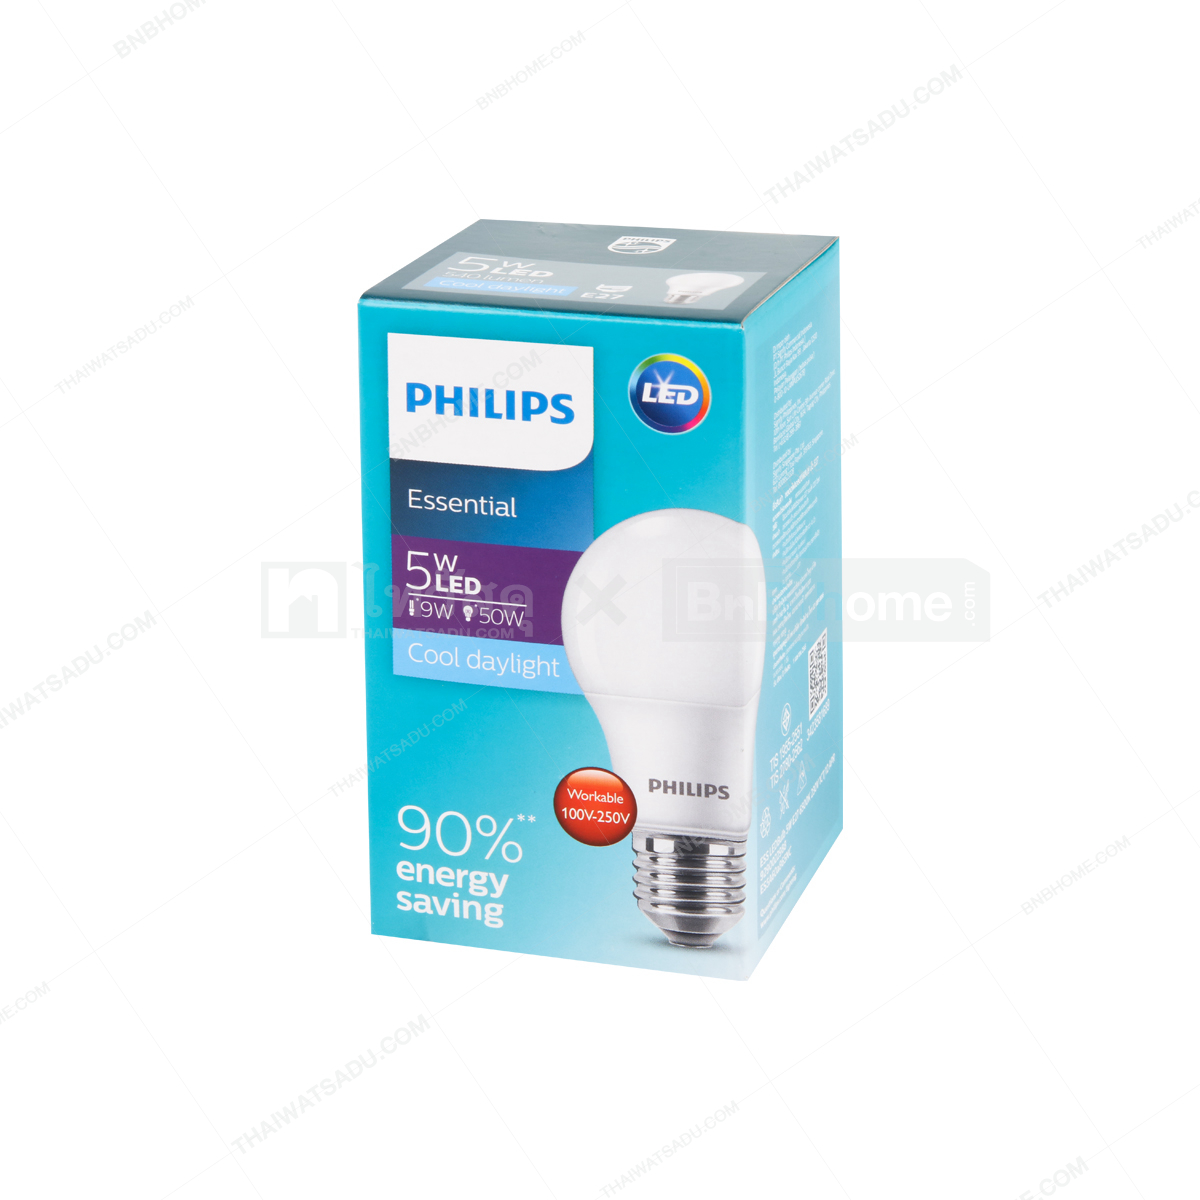 LED Bulb 5 W Cool Daylight PHILIPS ESS LEDBULB A60 E27